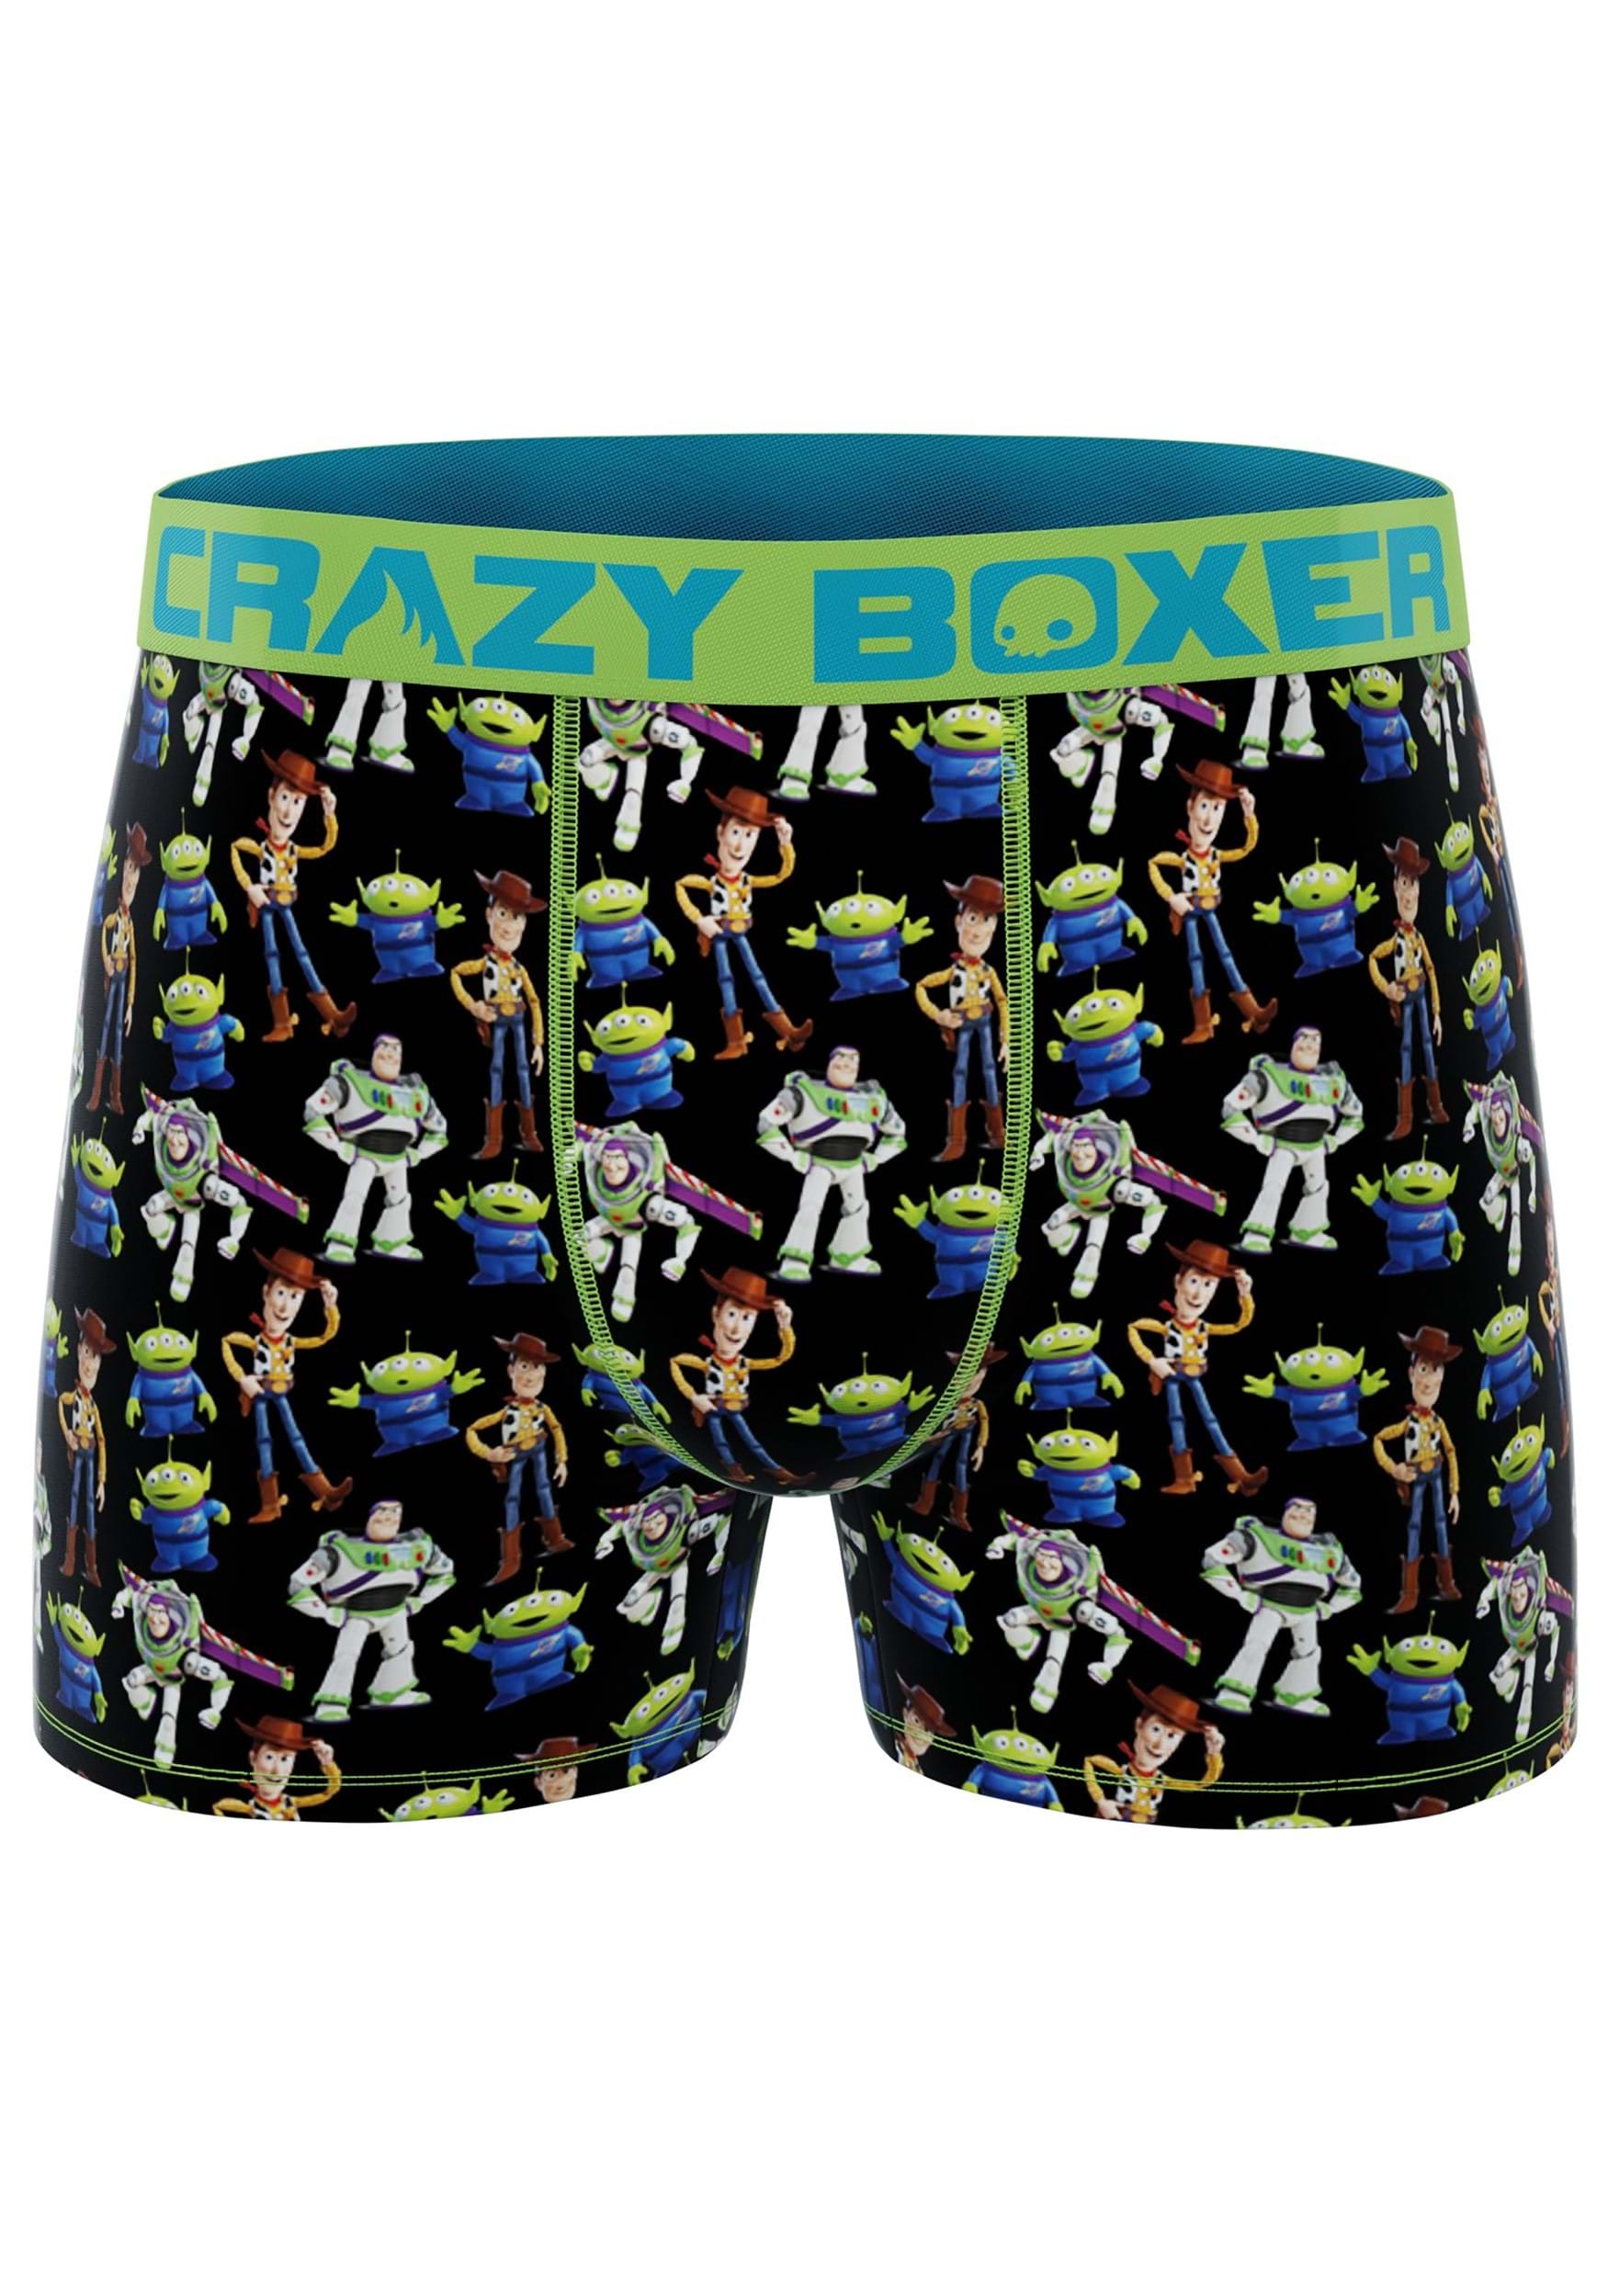 Disney Men's Lilo and Stitch Boxer Shorts